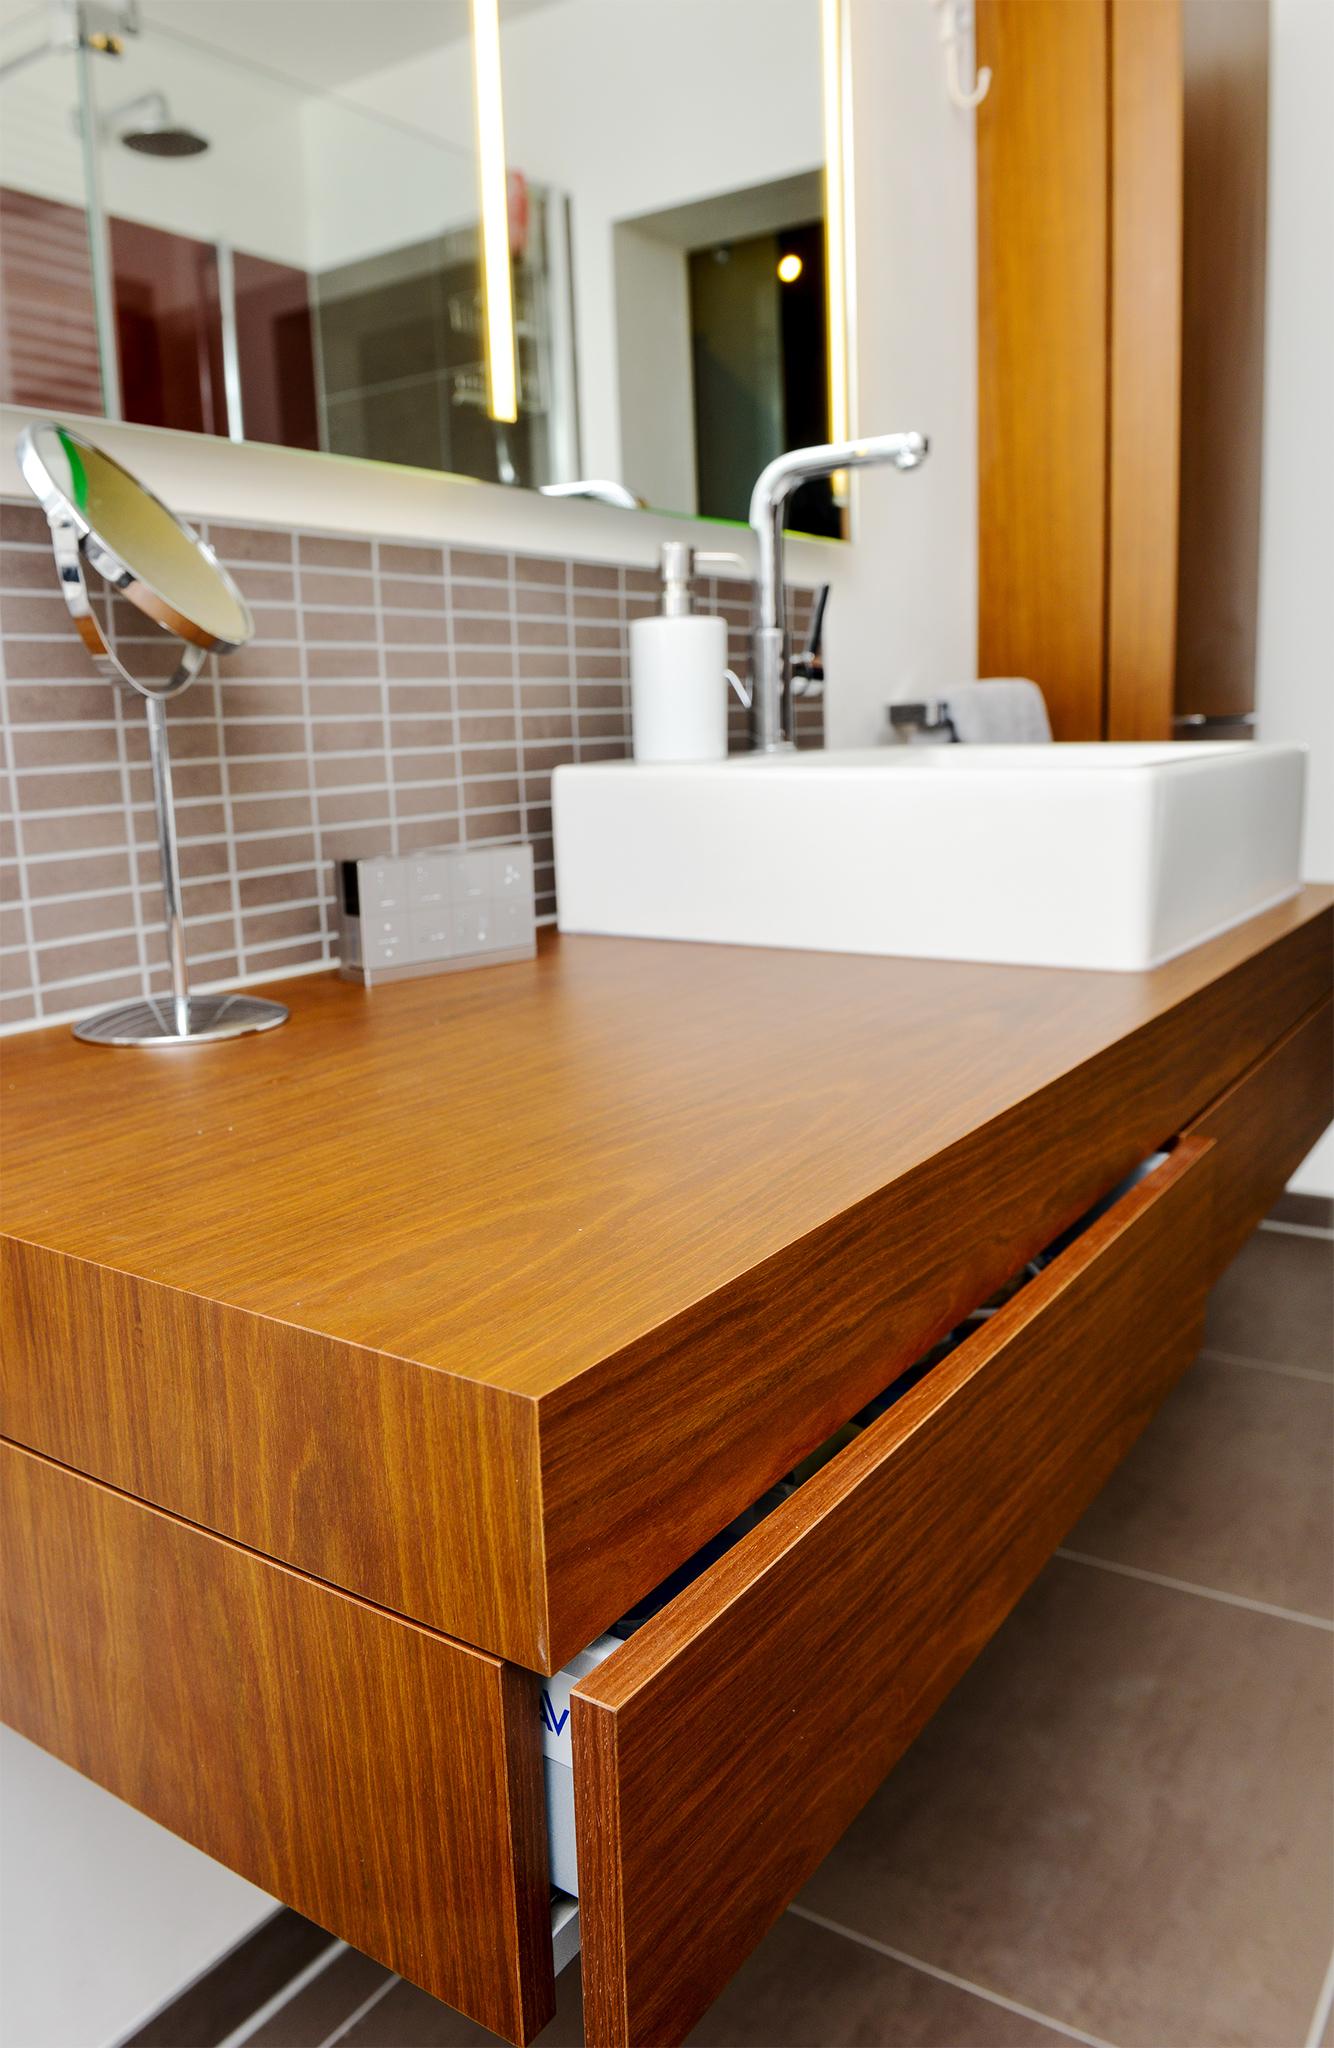 Echtholzfurnier für eine warme Atmosphäre #badewanne #badezimmer #grauefliesen ©HEIMWOHL GmbH